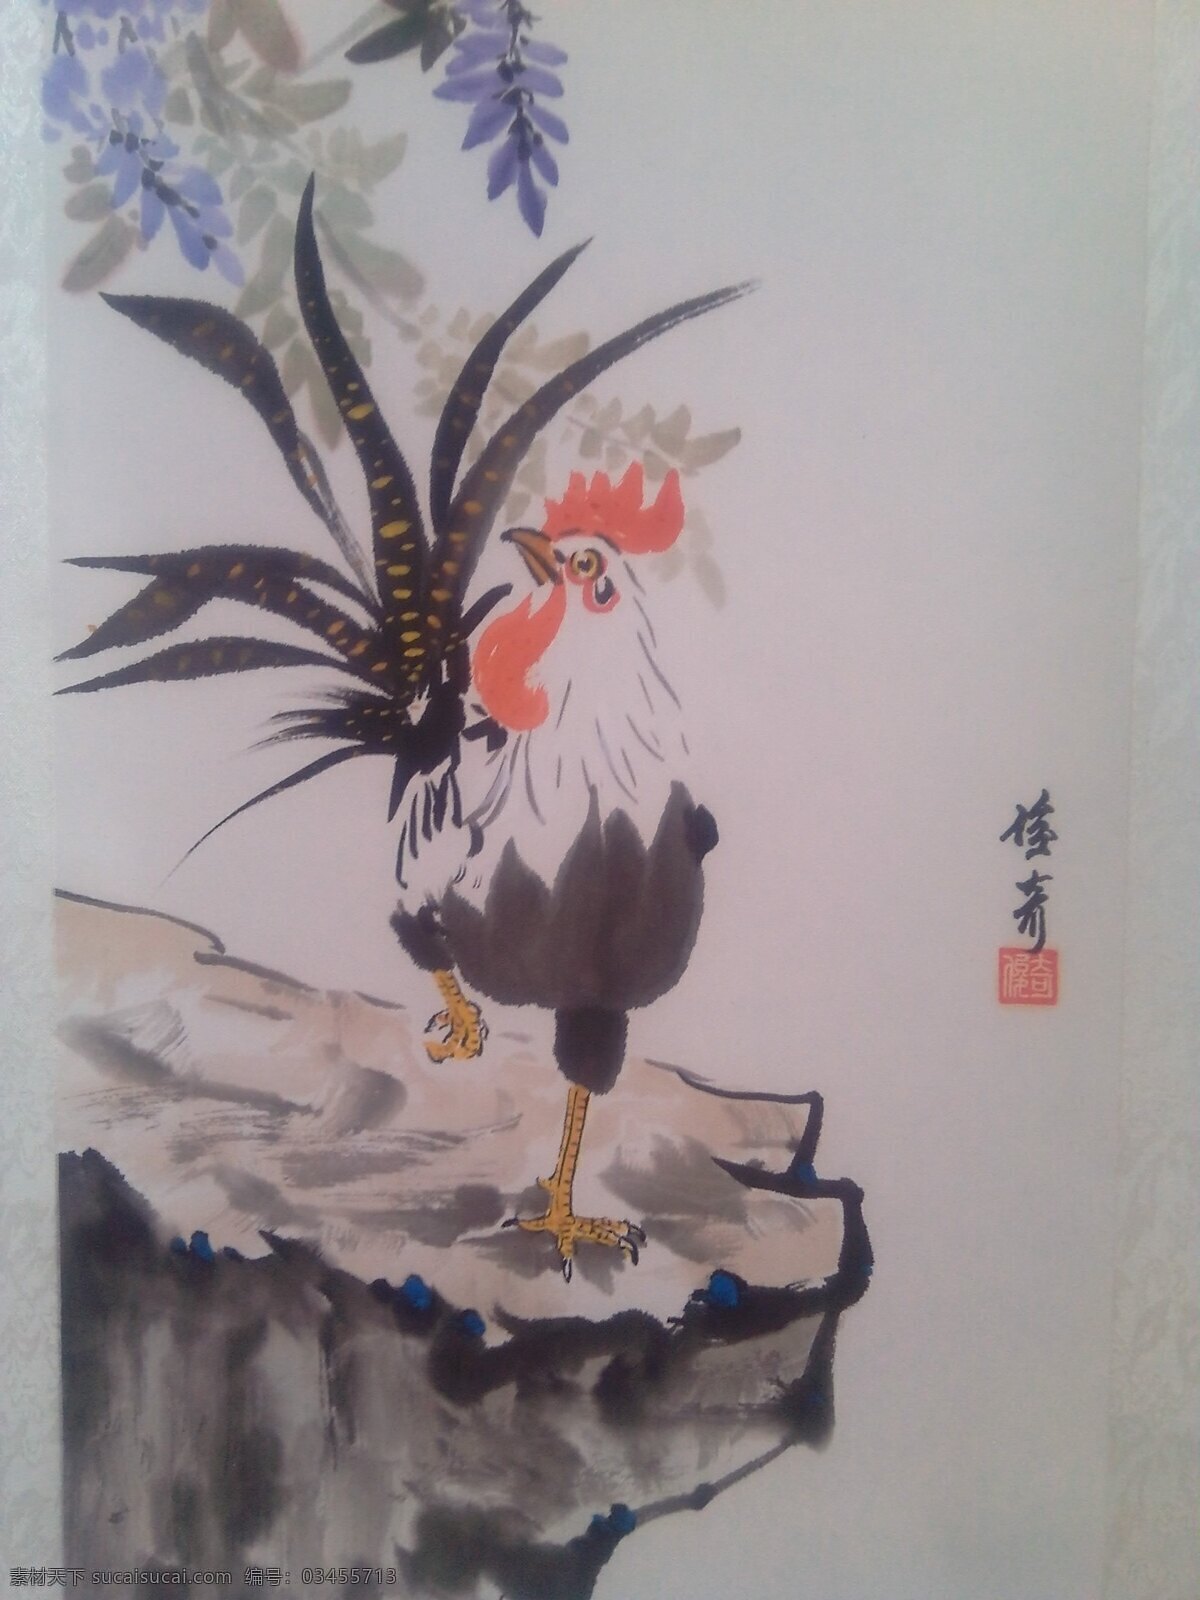 写意吉祥如意 中国画 公鸡 写意 紫藤 水墨 彩绘diy 文化艺术 美术绘画